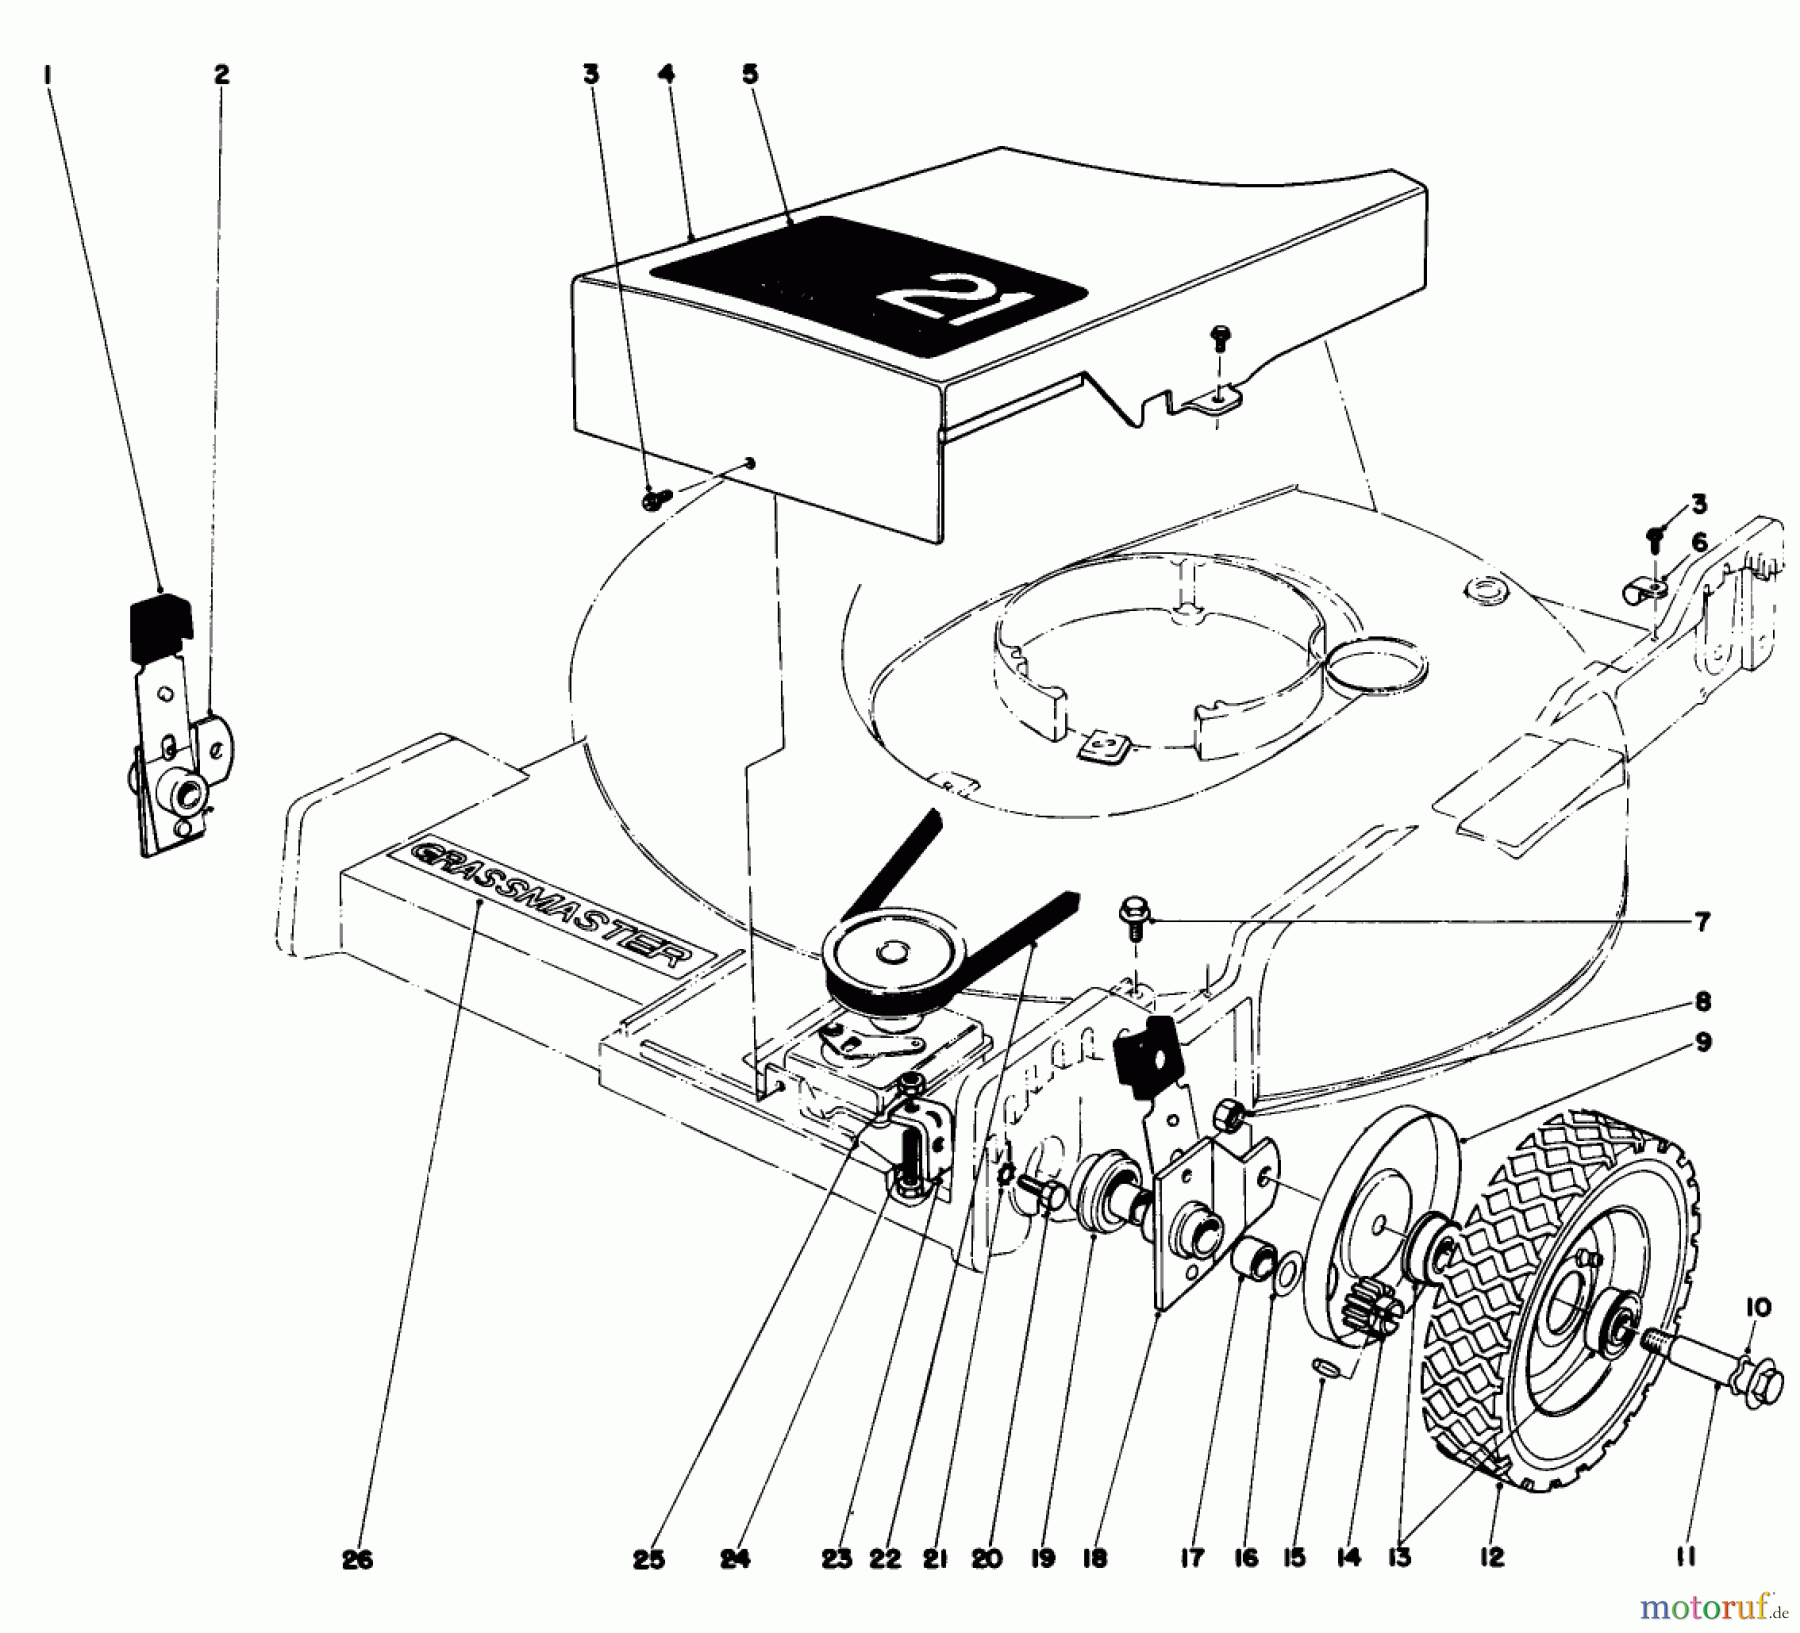  Toro Neu Mowers, Walk-Behind Seite 1 20562 - Toro Lawnmower, 1977 (7000001-7999999) FRONT WHEEL AND PIVOT ARM ASSEMBLY